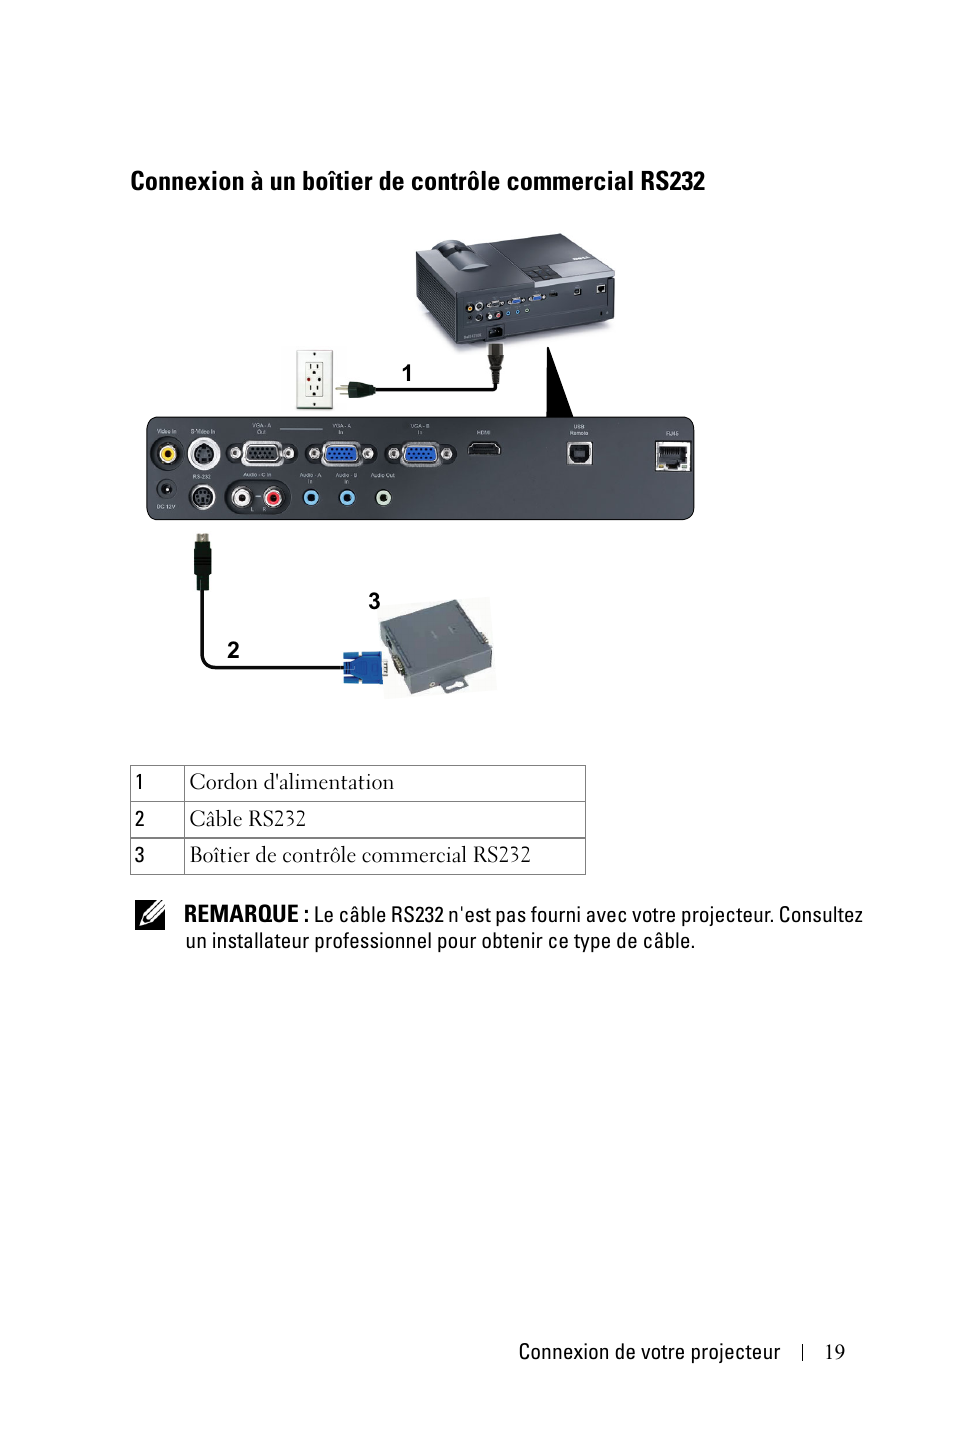 Connexion à un boîtier de contrôle commercial, Rs232 | Dell 4210X Projector Manuel d'utilisation | Page 19 / 81